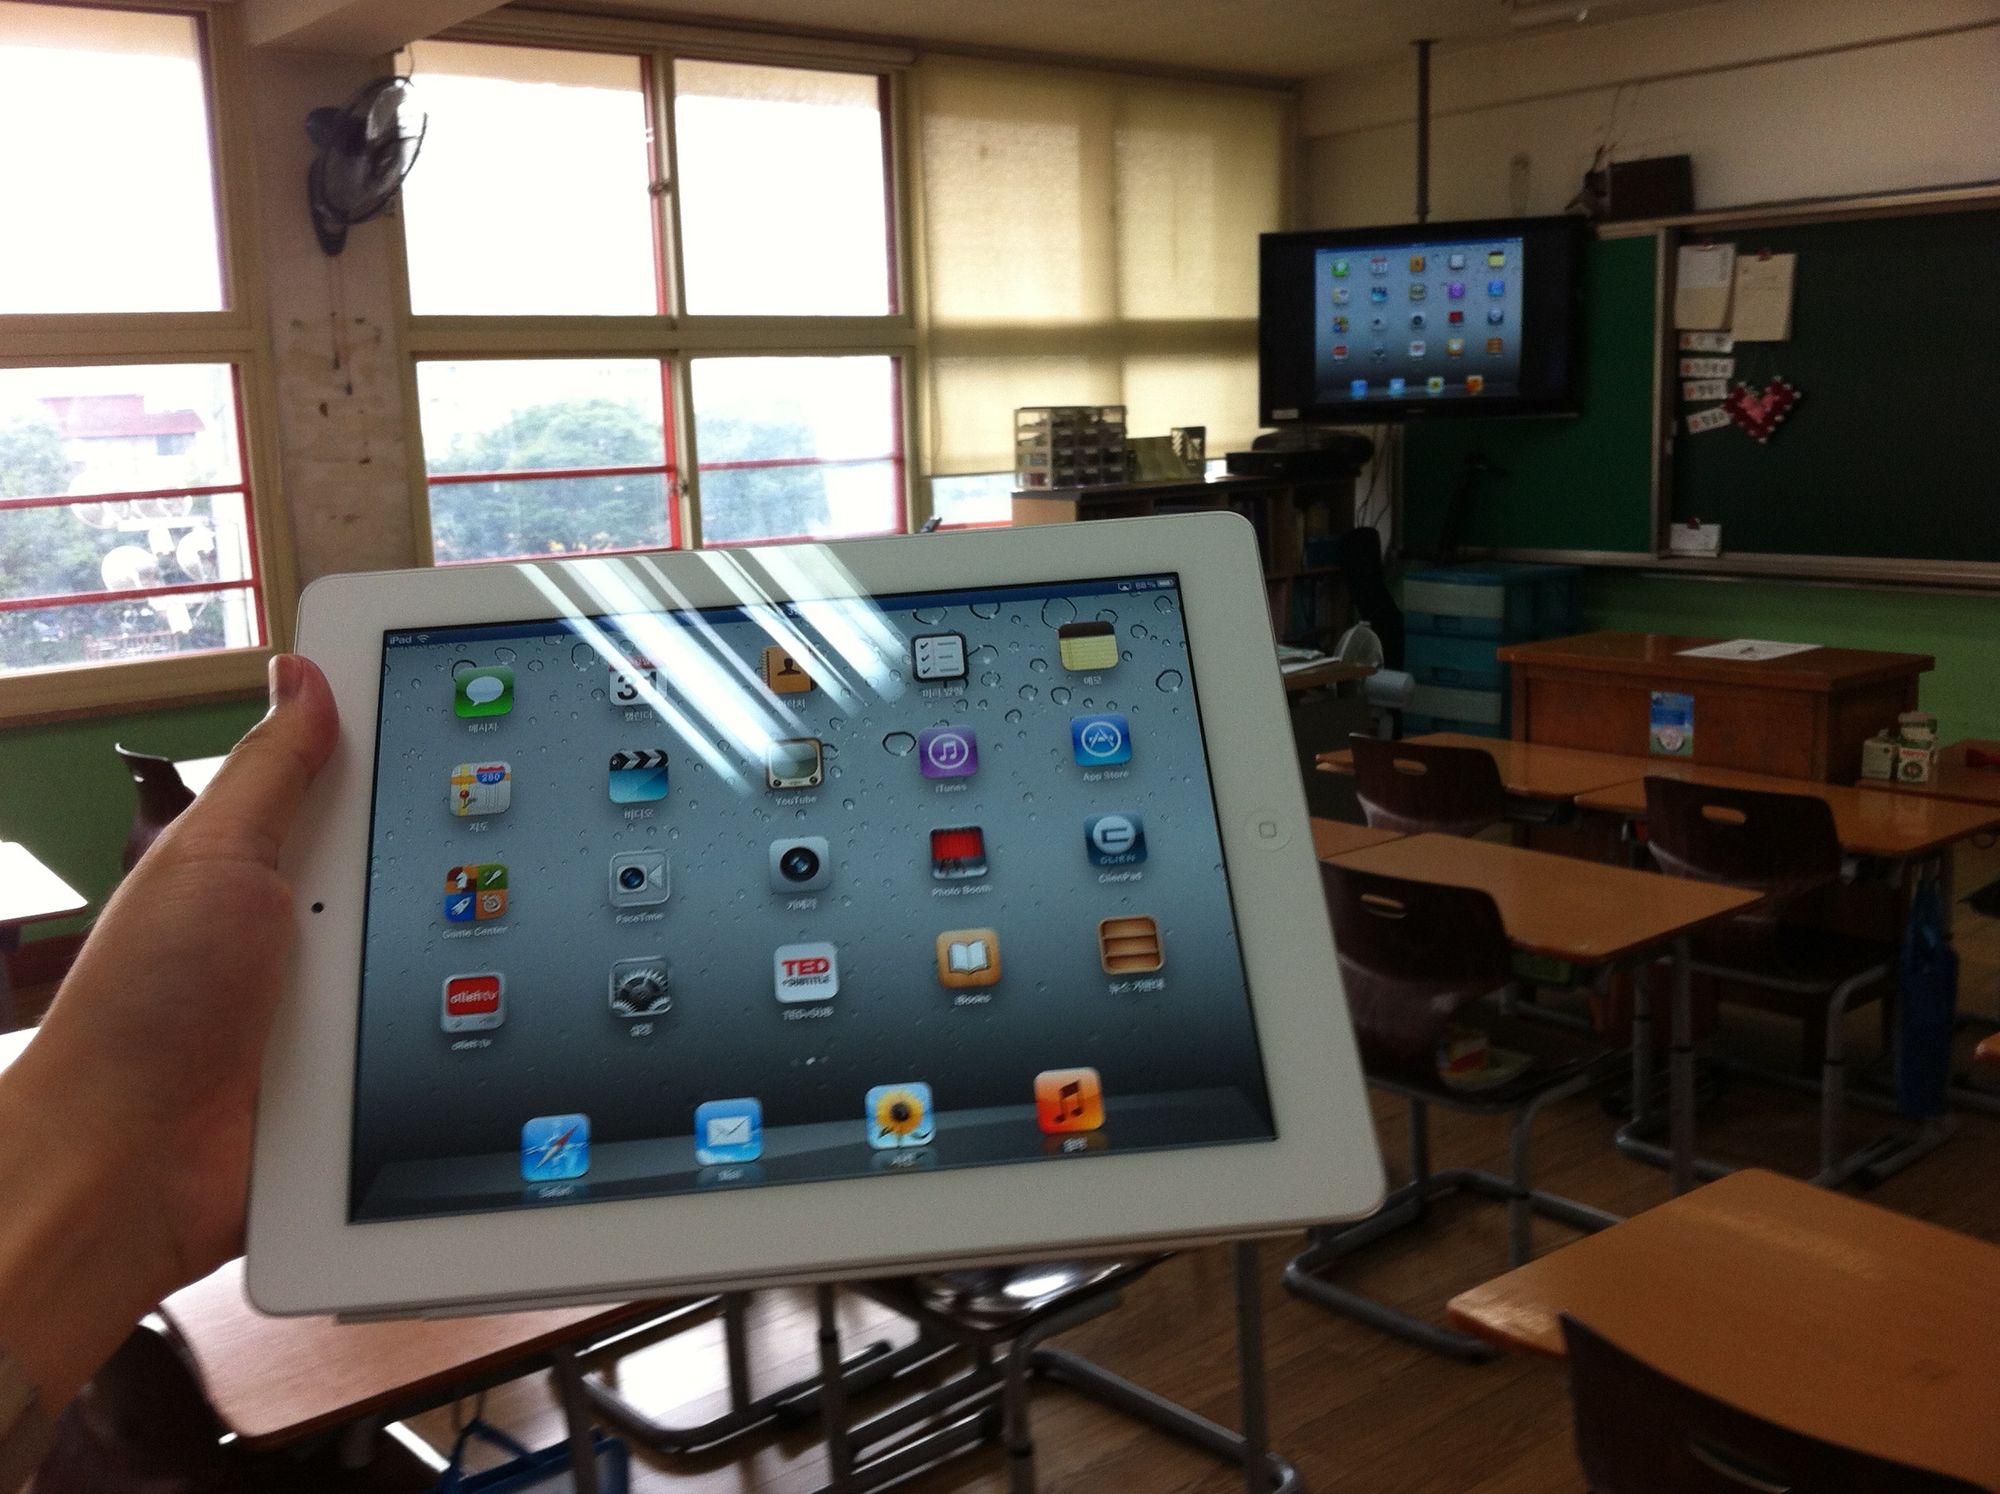 학교 교실 환경에서 아이패드2와 애플 TV로 무선 미러링 하기